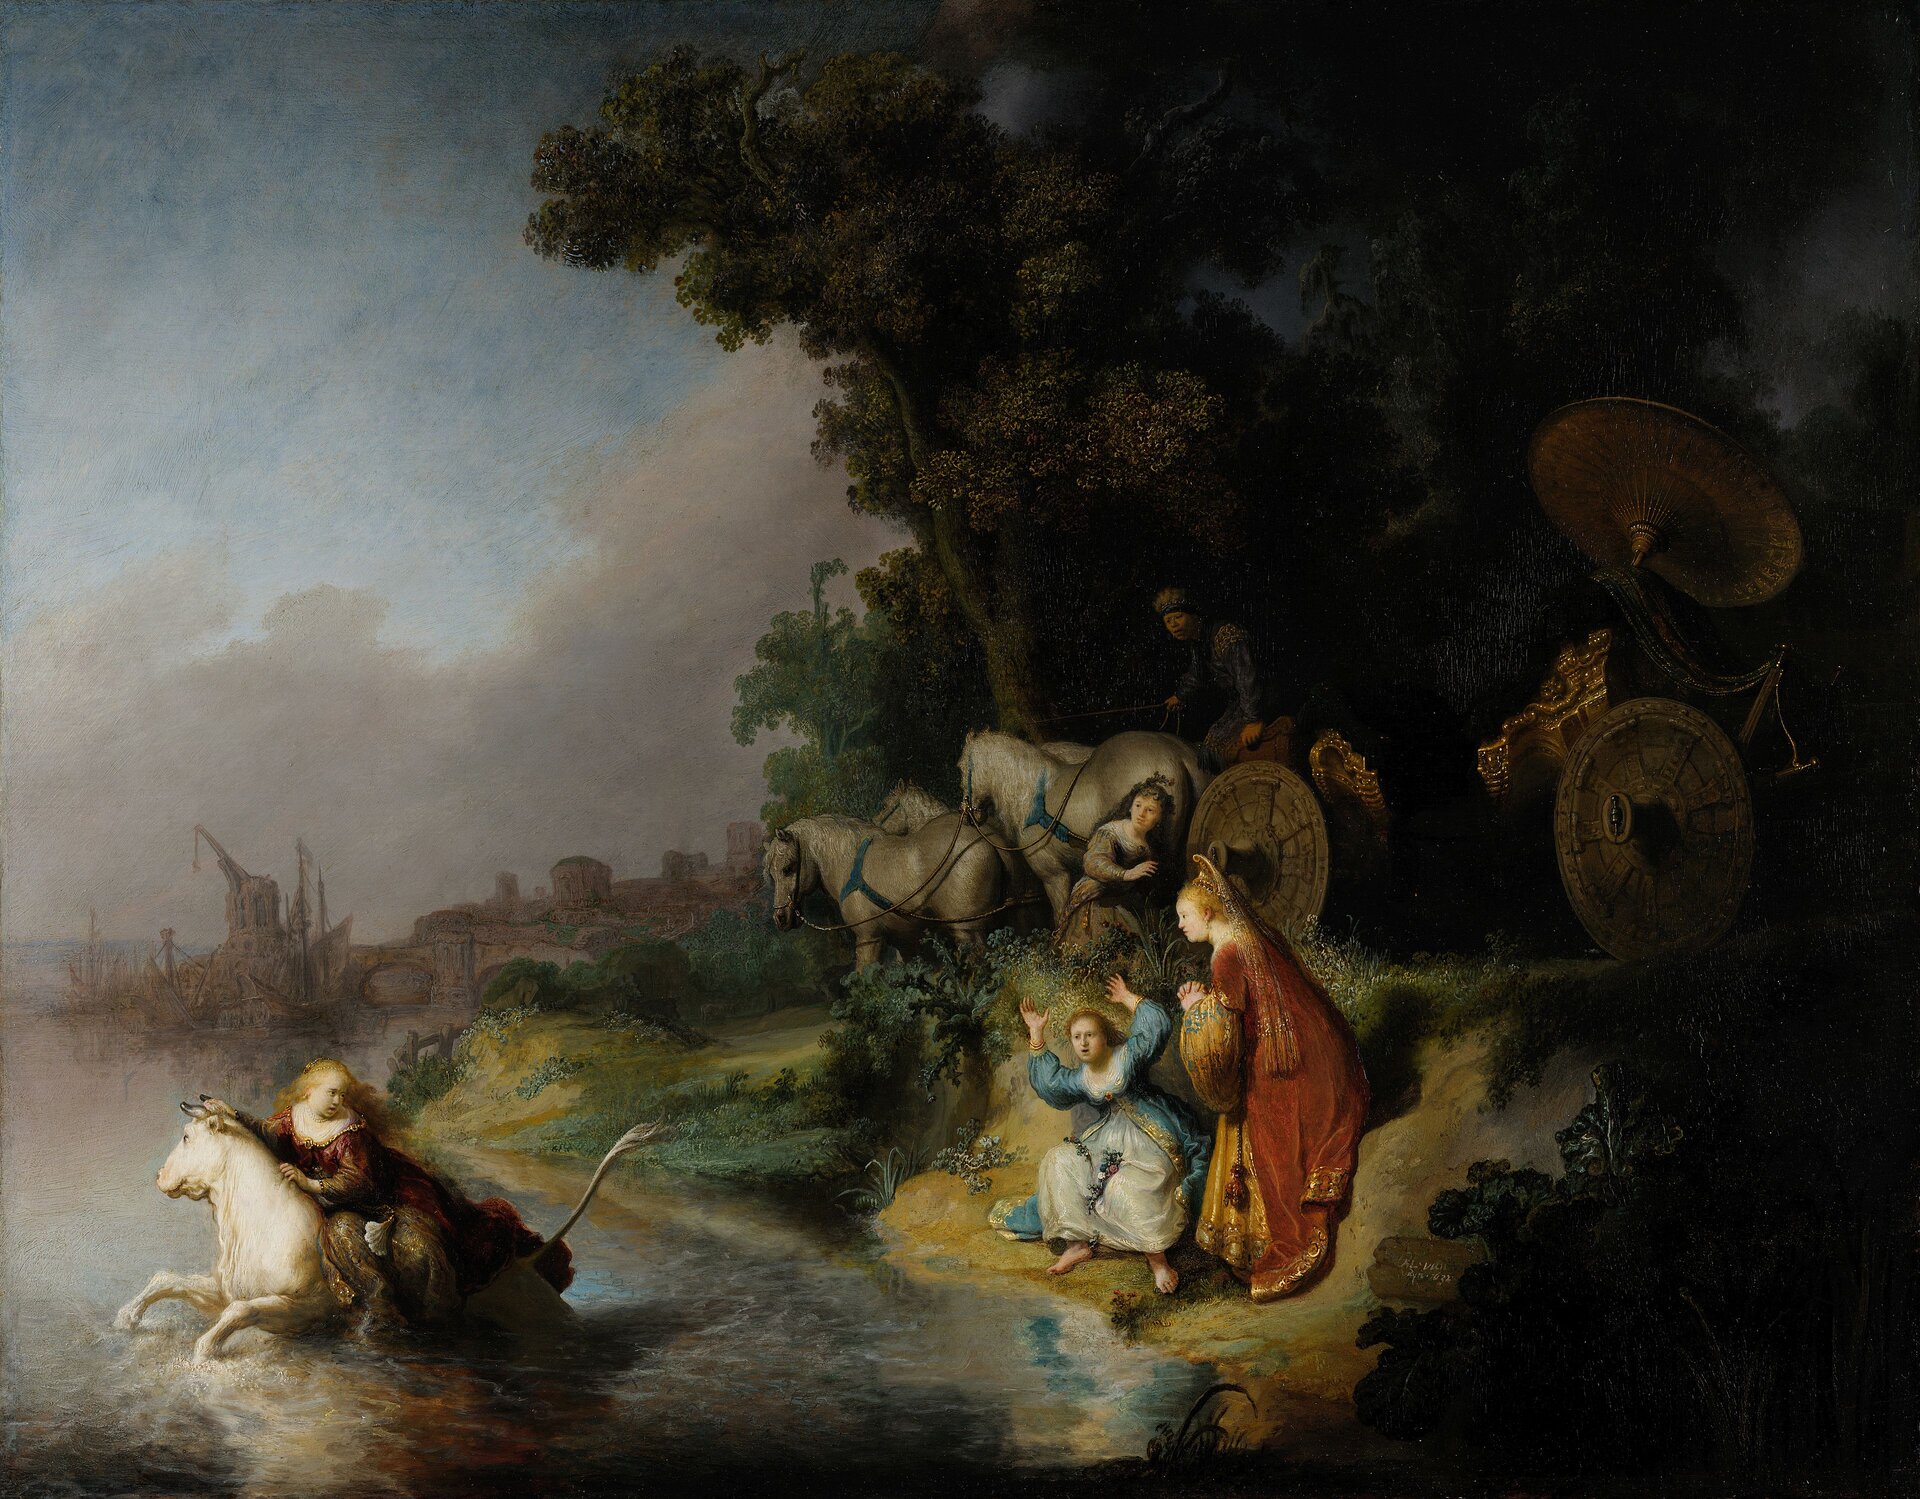 Ilustracja przedstawia obraz Rembrandta pt. „Porwanie Europy”. Po lewej stronie obrazu widzimy wodę, w której galopuje biały byk, trzymając na grzbiecie kobietę w brązowej sukni i długich blond włosach. Kobieta z wyrazem przerażenia na twarzy odwraca się do towarzyszek, które stoją na brzegu. Są to dwie kobiety, jedna z nich, w biało – niebiskiej sukni, ma podniesione ręce do góry i krzyczy, druga, w sukni czerwono – złotej, składa ręce do modlitwy. Patrzą za uprowadzoną Europą. Powyżej kobiet znajdują się kolejne dwie postacie, chowające się przy wozie, zaprzężonym w cztery białe konie. Po prawej stronie rozpościera się ciemny las. W tle widać miasto portowe, niebo jest szare, zachmurzone.